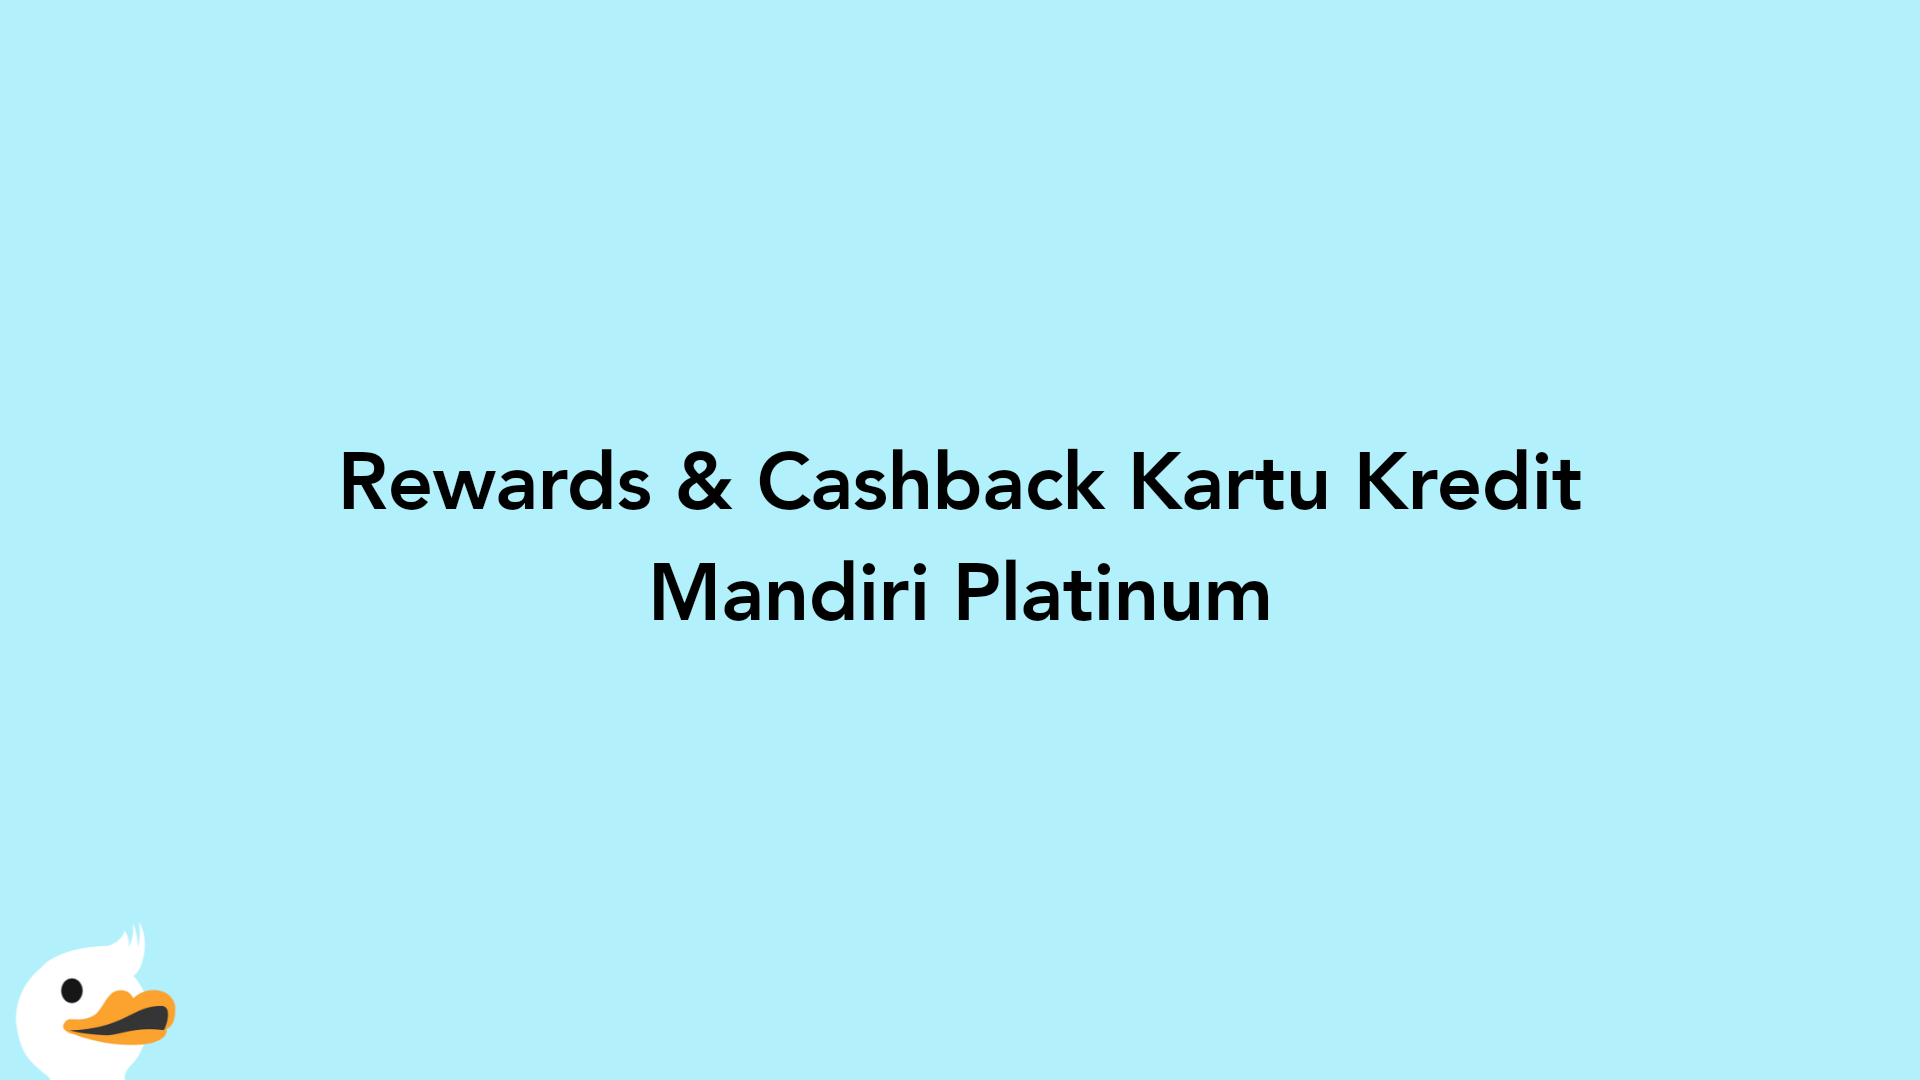 Rewards & Cashback Kartu Kredit Mandiri Platinum